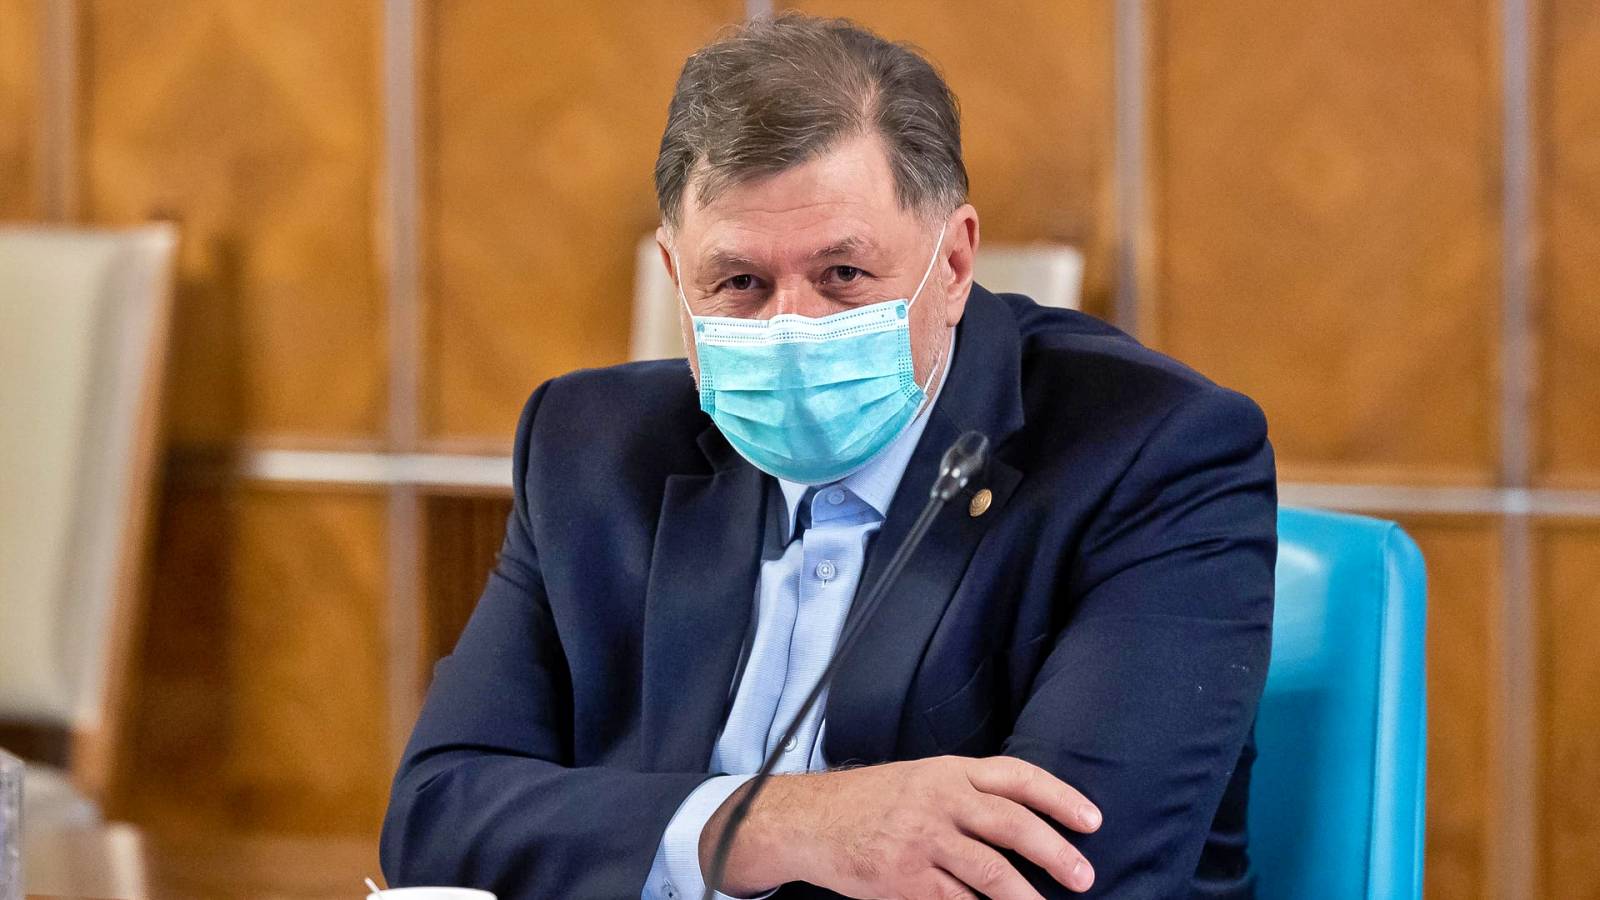 Sundhedsminister sidste øjebliks beslutninger på højt niveau truffet Rumænien